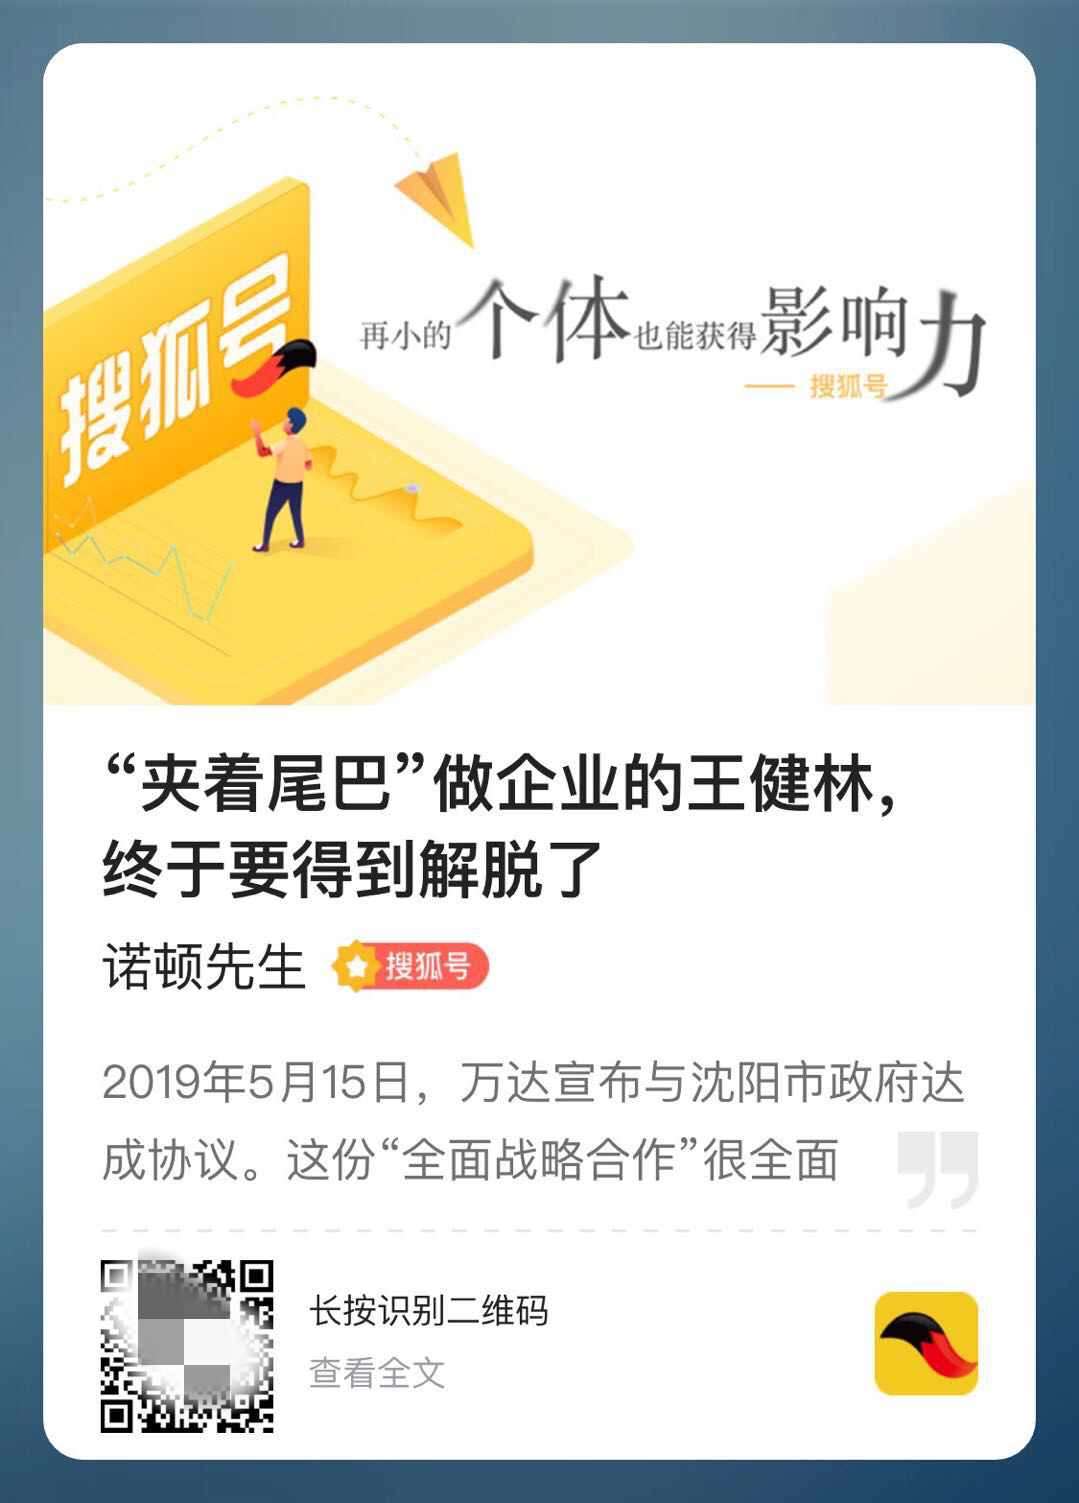 搜狐号上线文章海报生成功能，一键分享到朋友圈